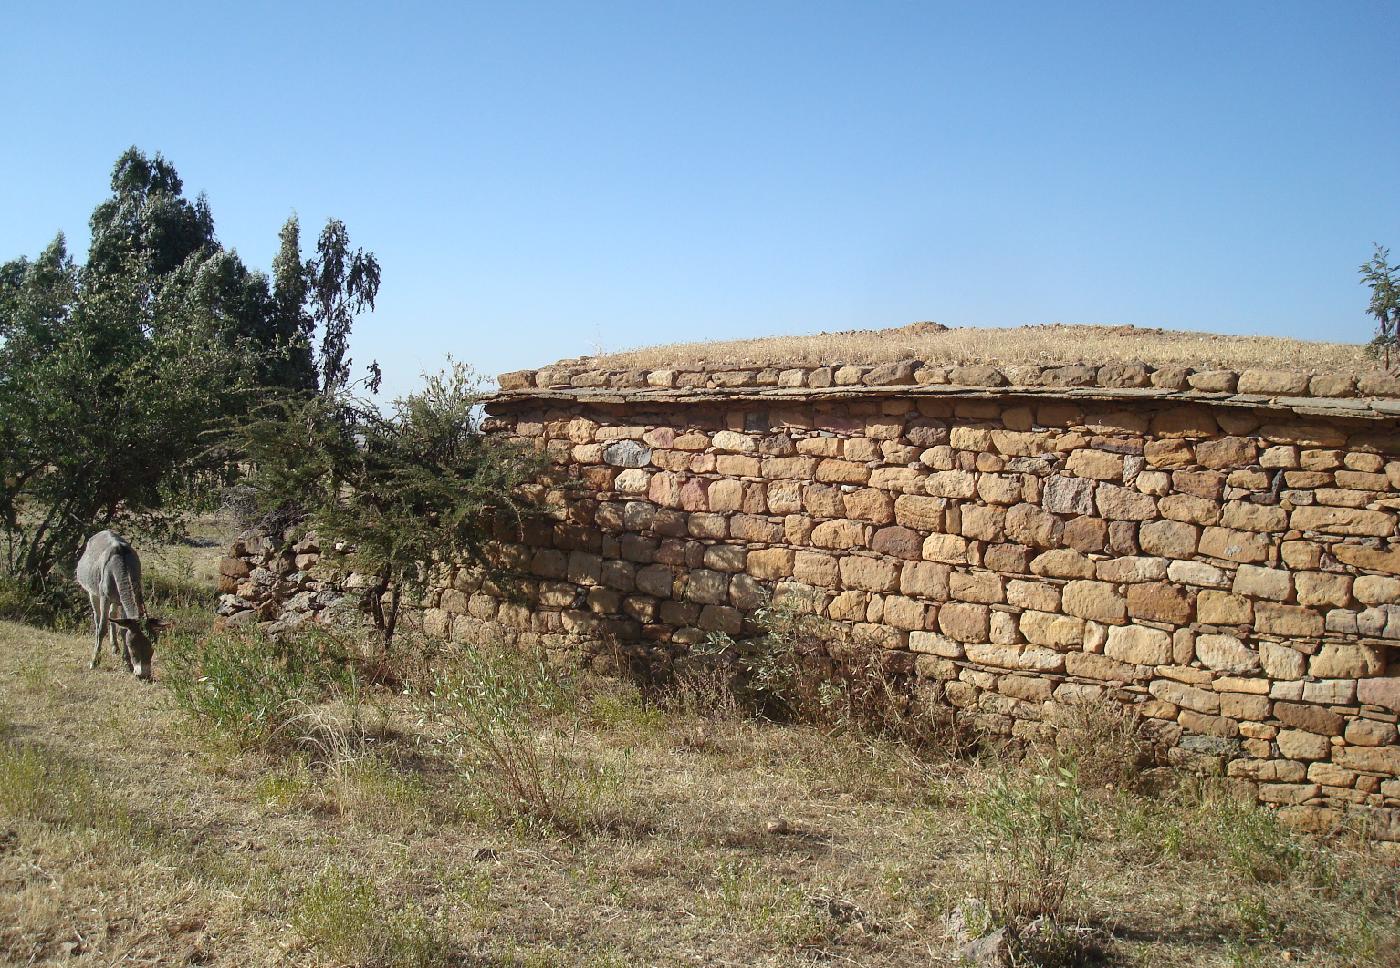 DSC030380.jpg - Maison rurale en pierre recouverte de terre